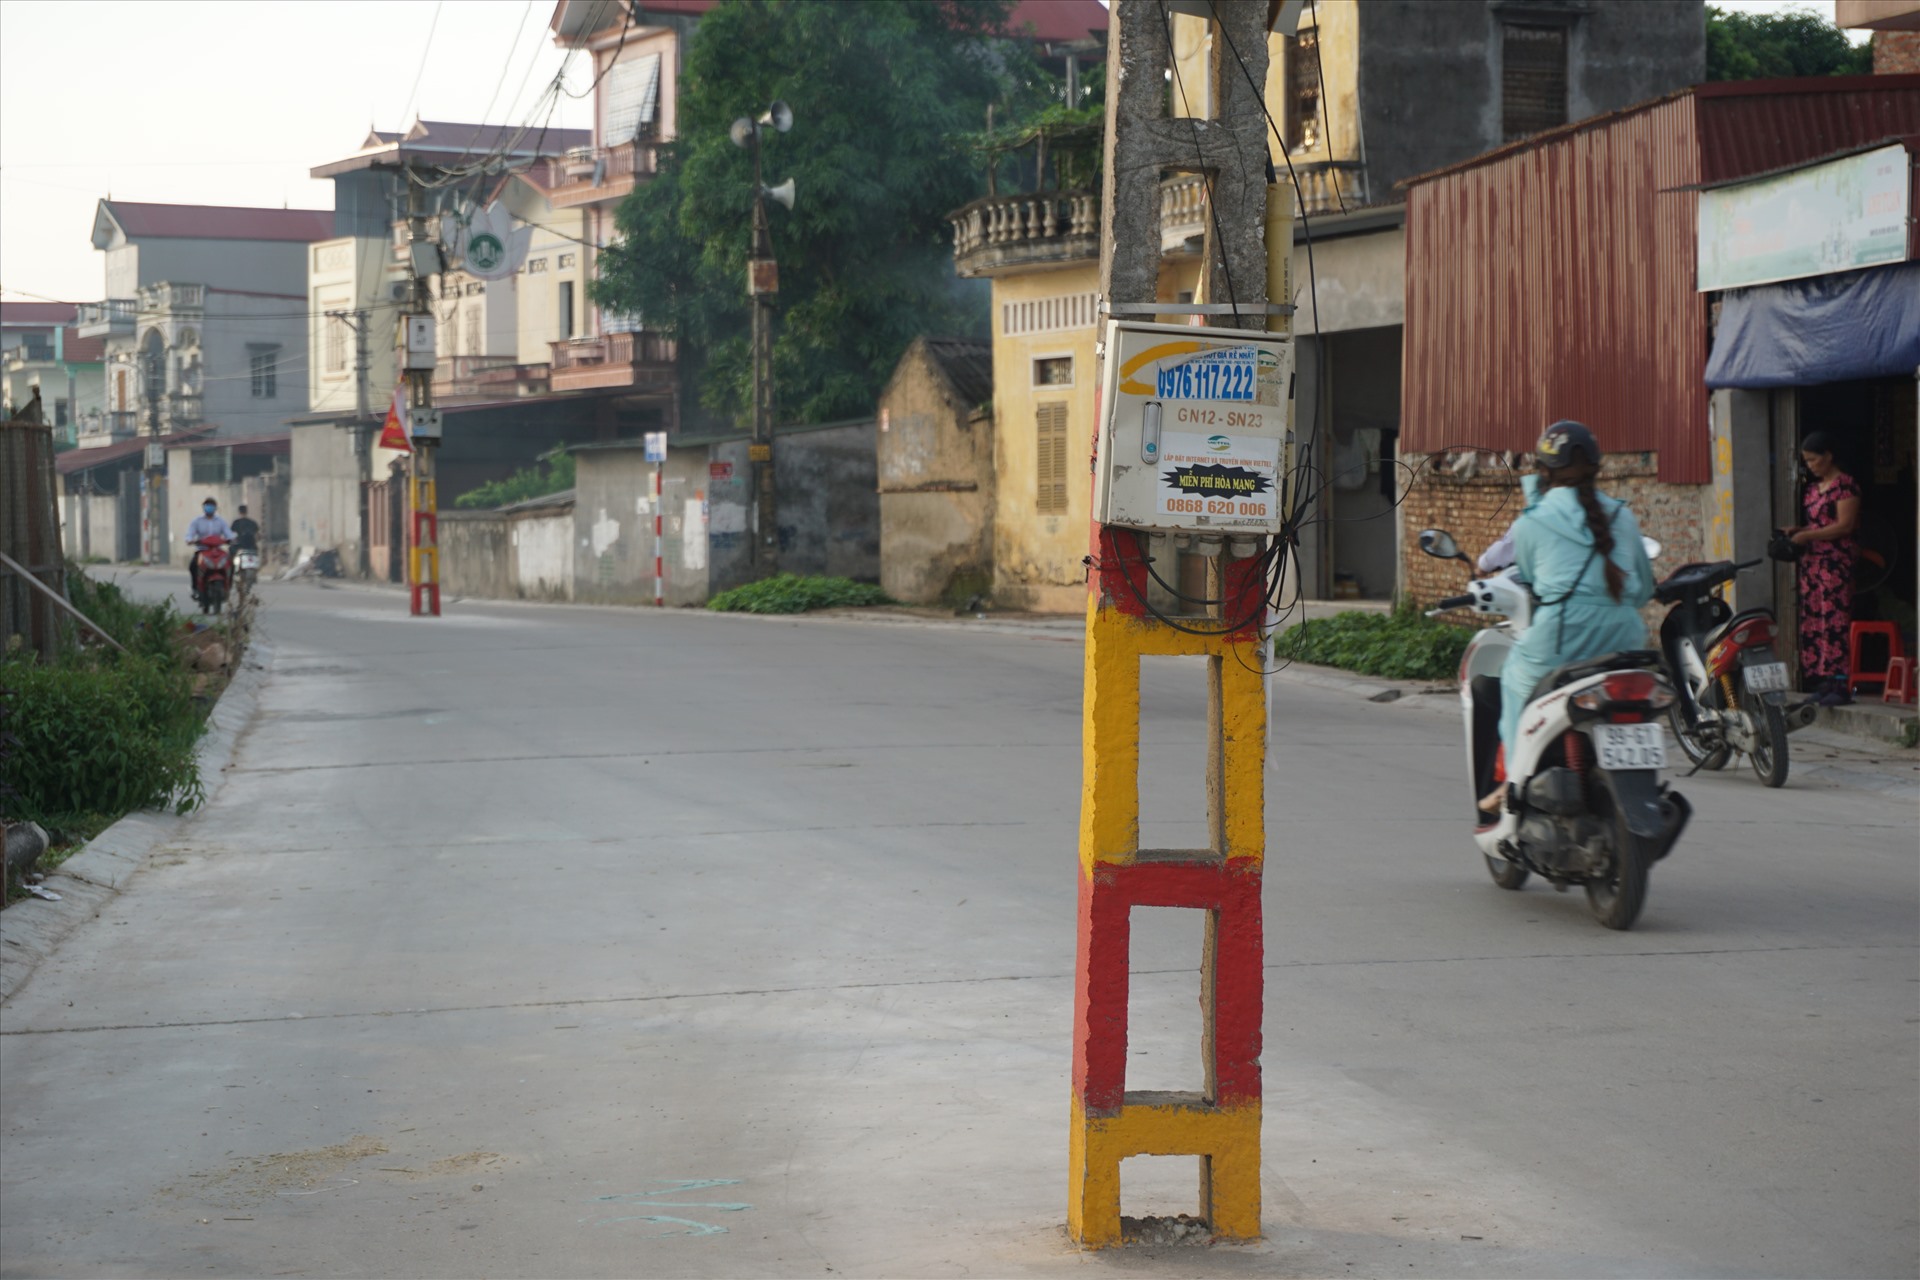 Lãnh đạo địa phương cho hay, những cột điện không được di chuyển vì không nằm trong dự án nâng cấp tuyến đường. Ảnh: Long Nguyễn.